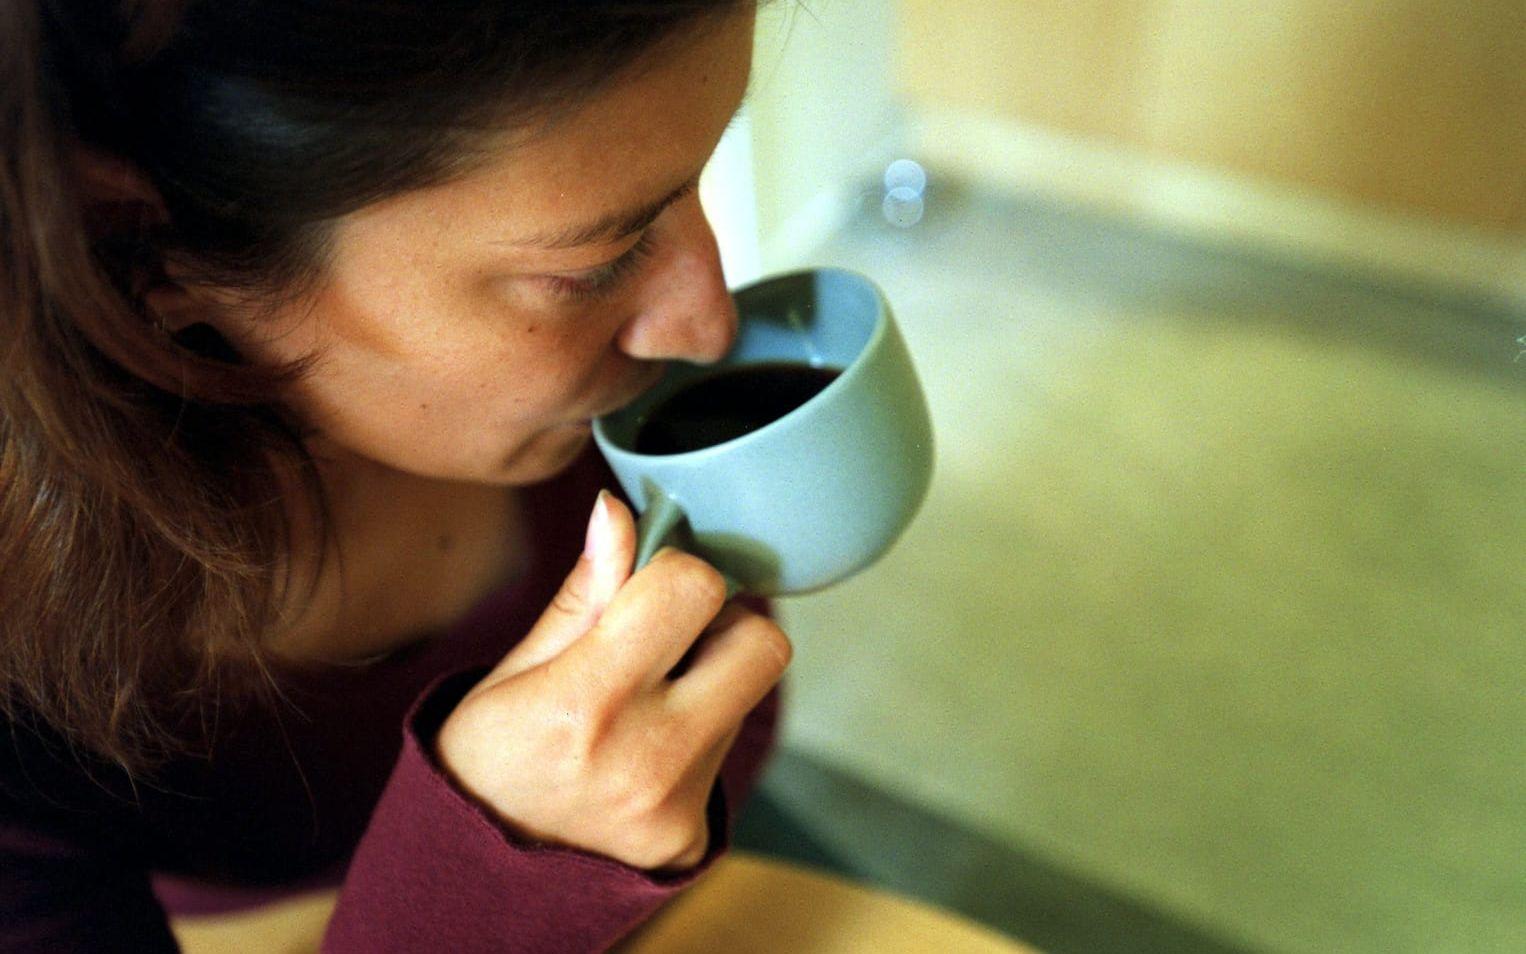 Många dricker kaffe för att motverka trötthet när de egentligen borde få mer sömn. En färsk studie visar att kaffets uppiggande effekt bara biter på nattsuddare tre dagar på raken. Efter det slutar kroppen reagera på koffeinet och det enda som fungerar är att ta igen den förlorade sömnen.